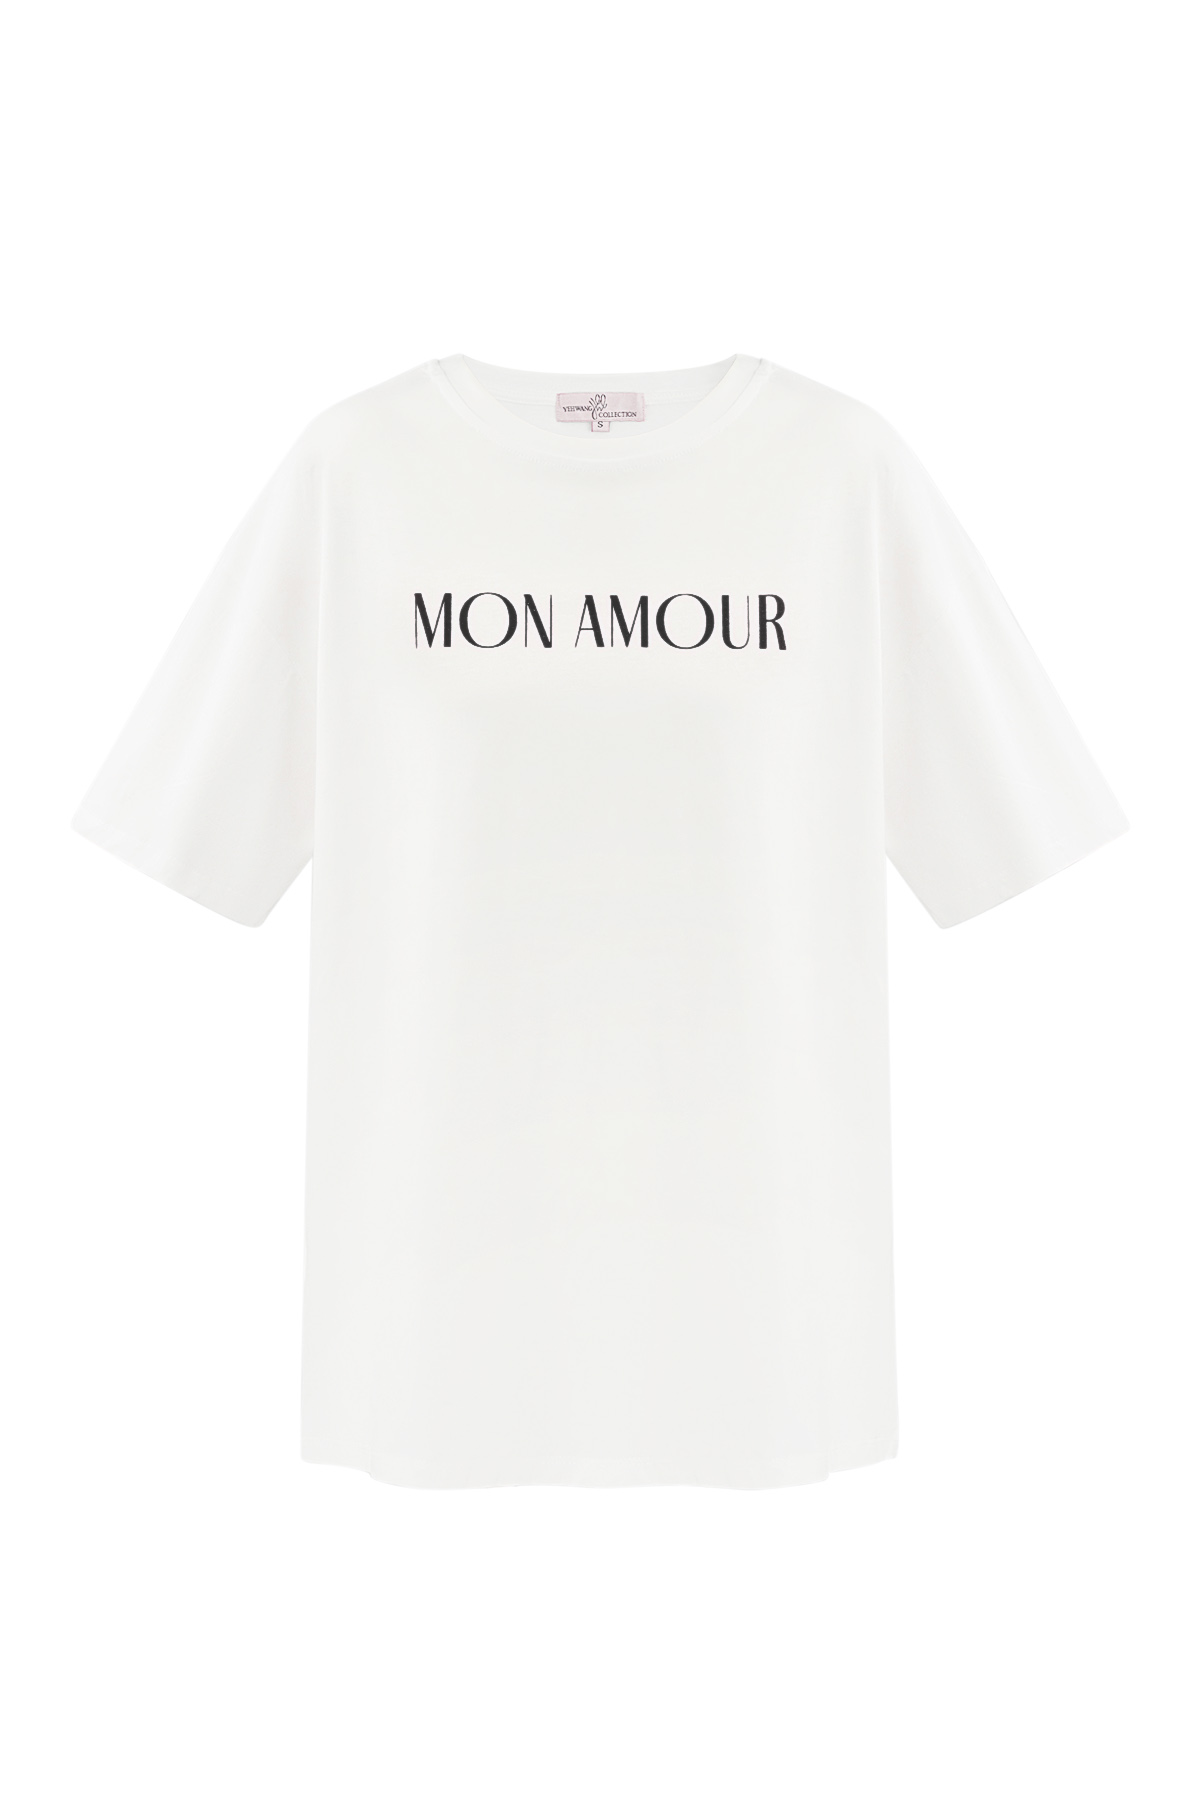 T-shirt mon amour - siyah beyaz